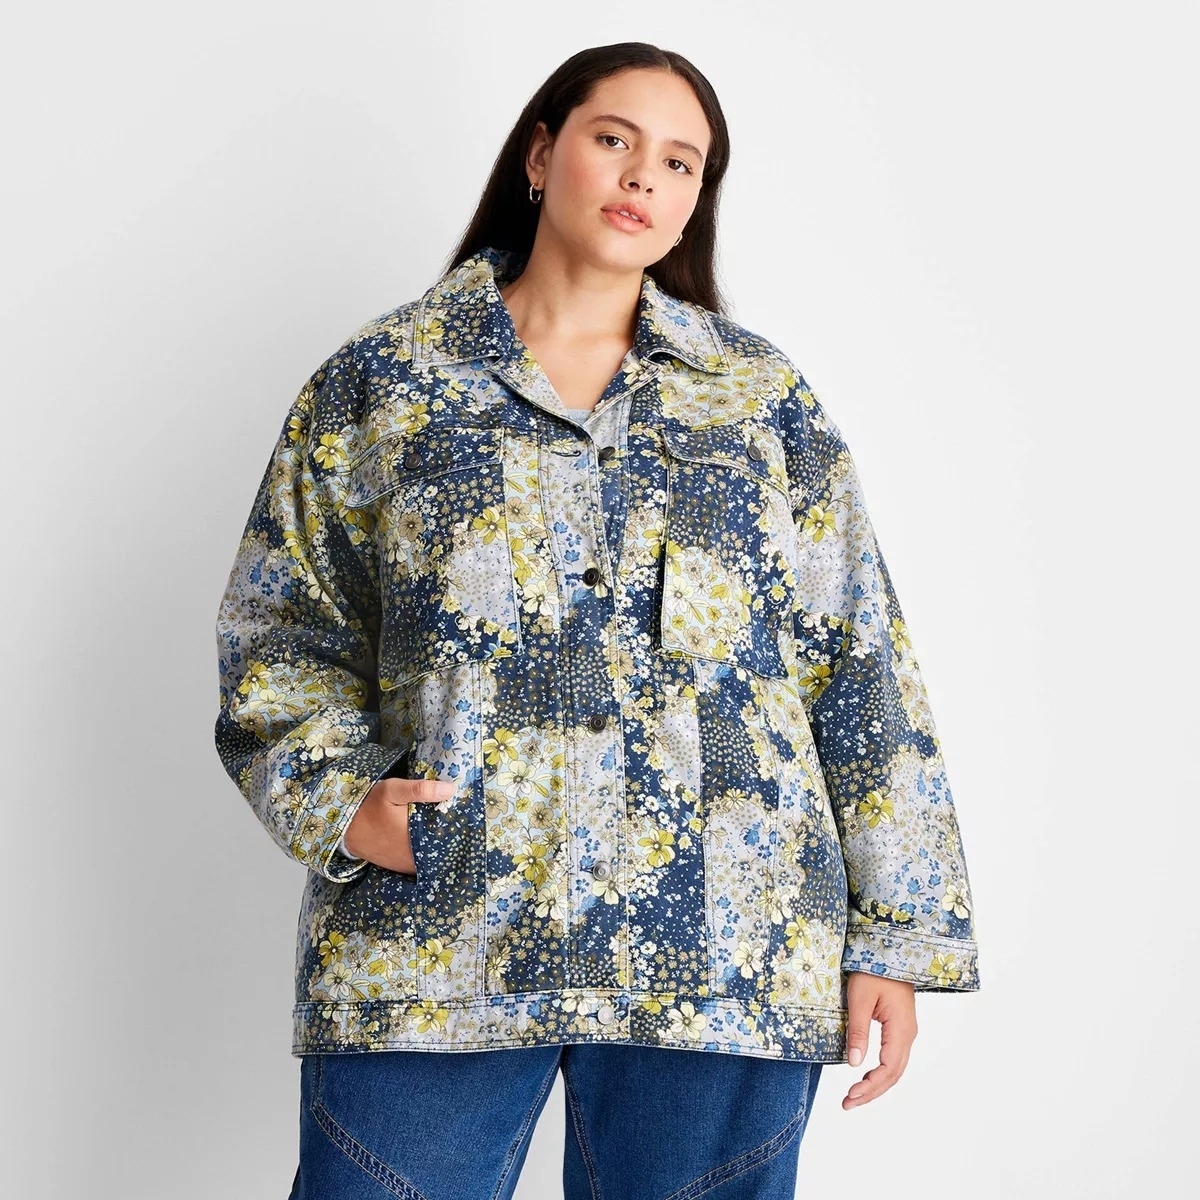 Model wearing a floral print denim jacket